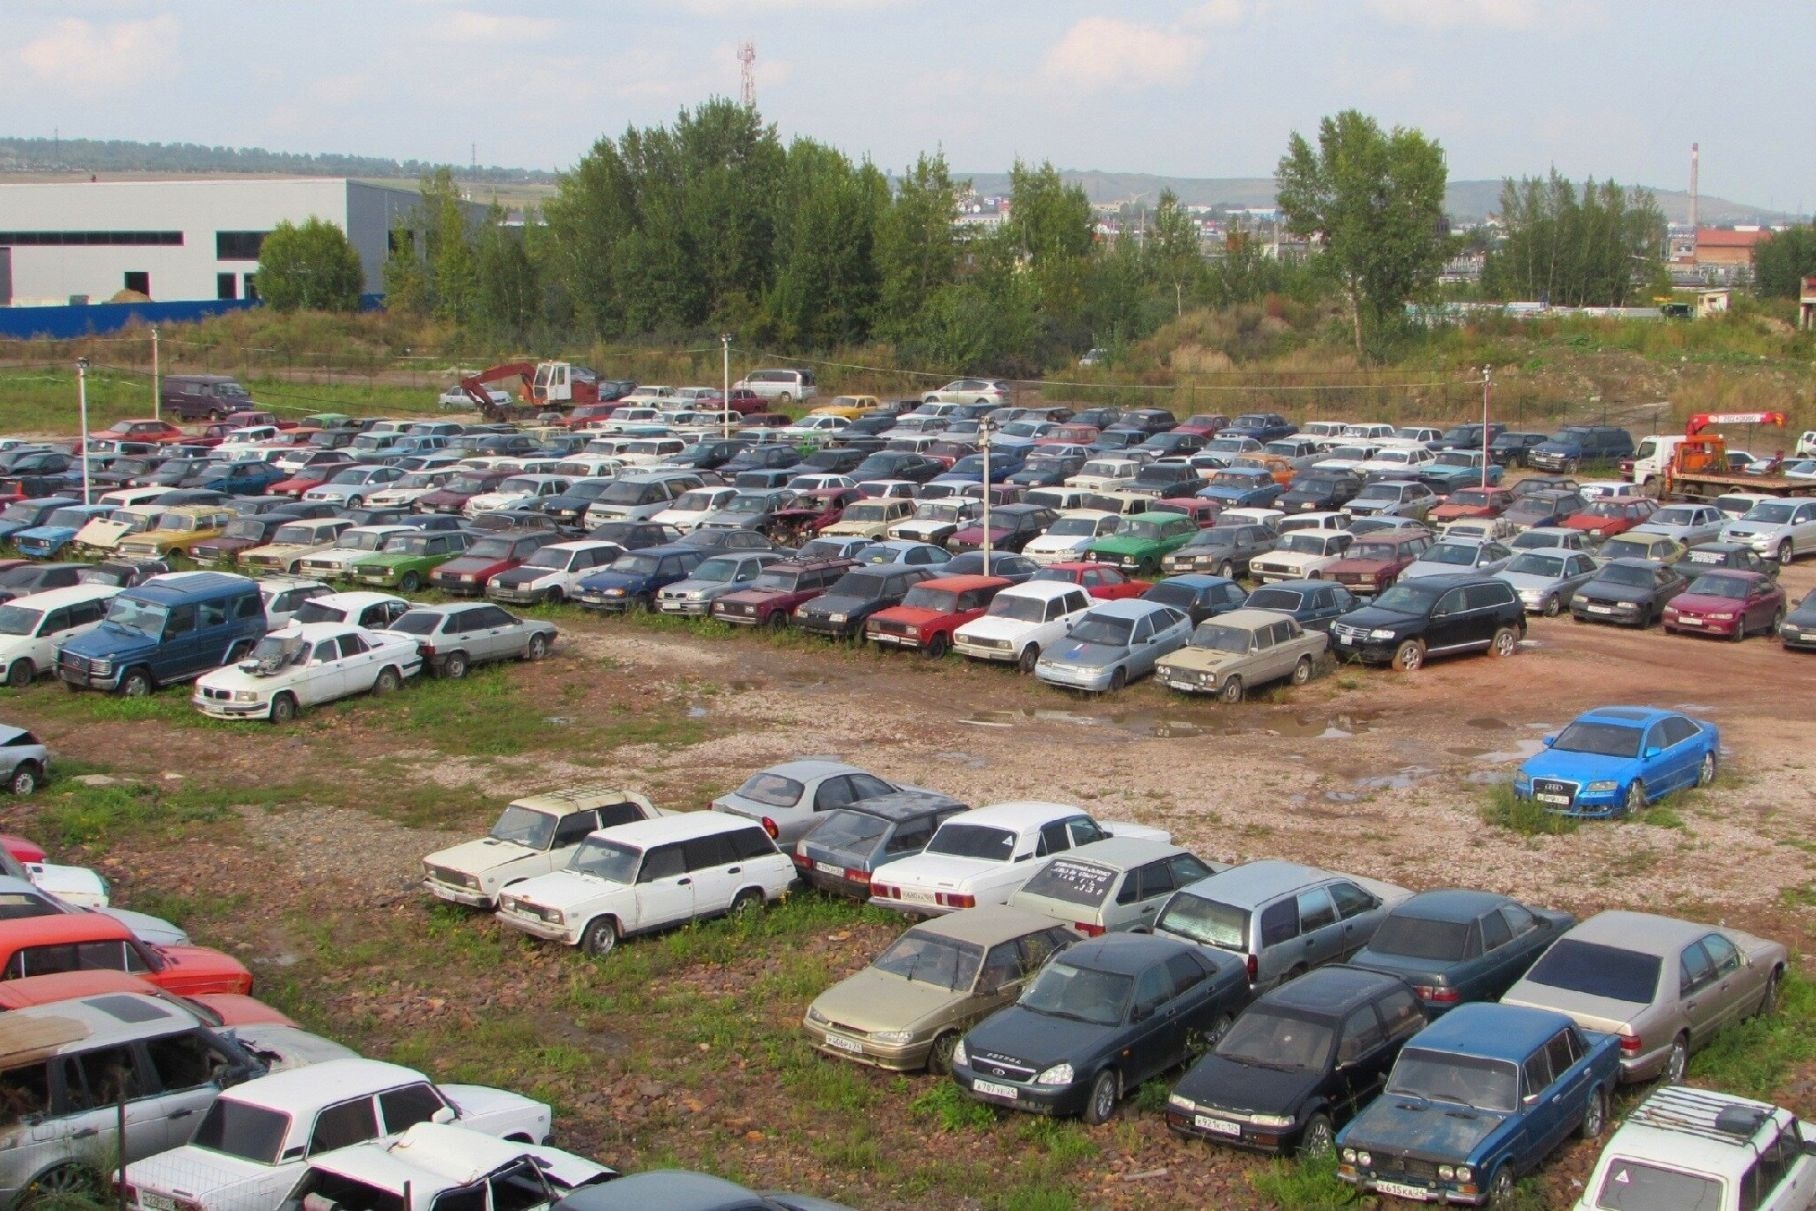 кладбище каршеринговых машин в москве